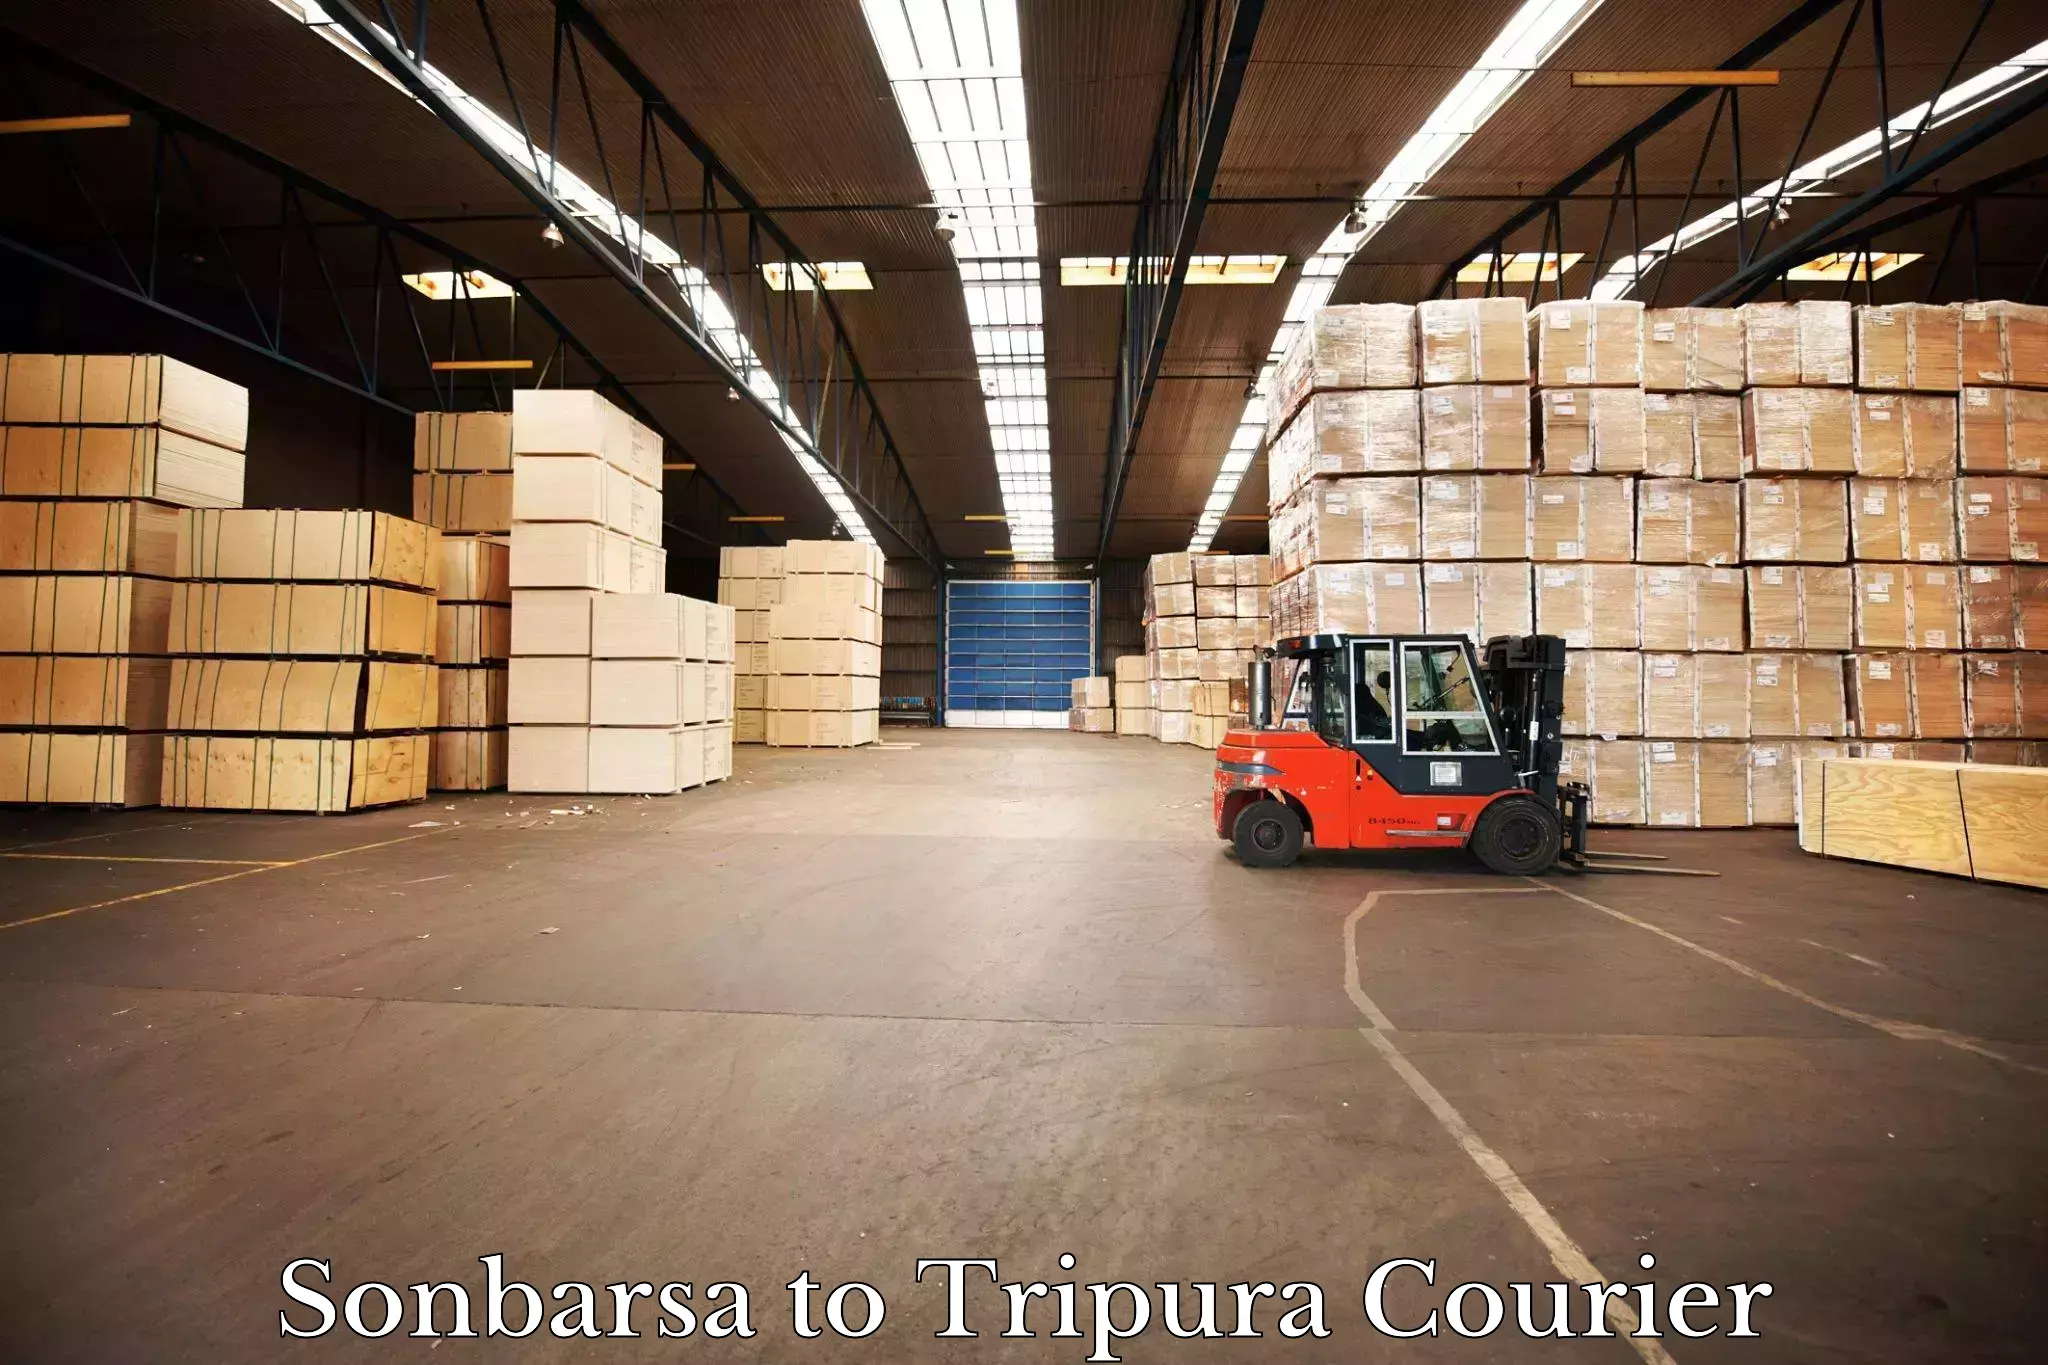 Full-service courier options Sonbarsa to Tripura